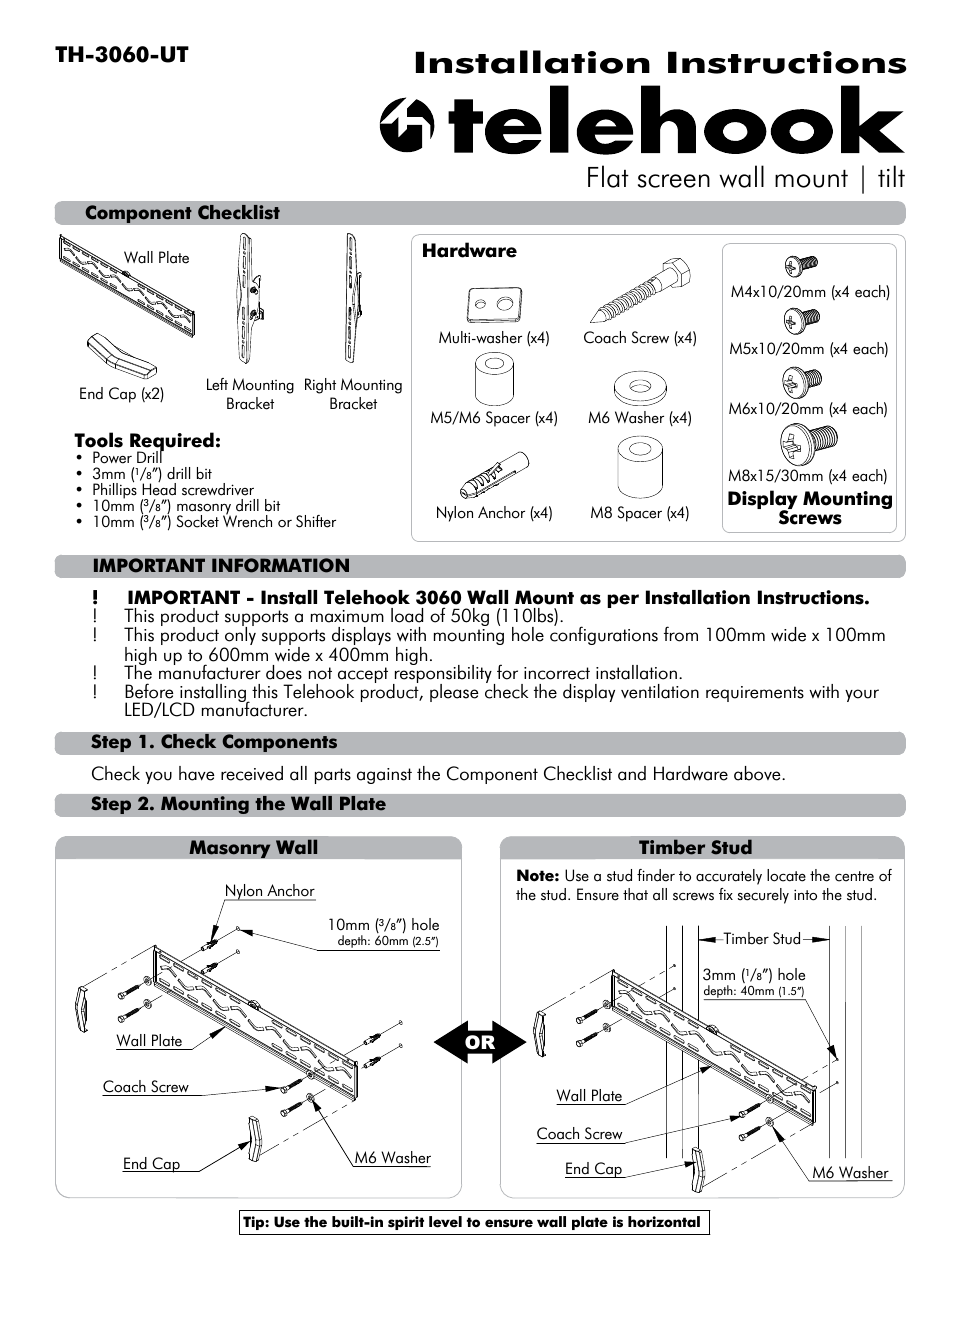 Telehook TH-3060-UT Installation manual